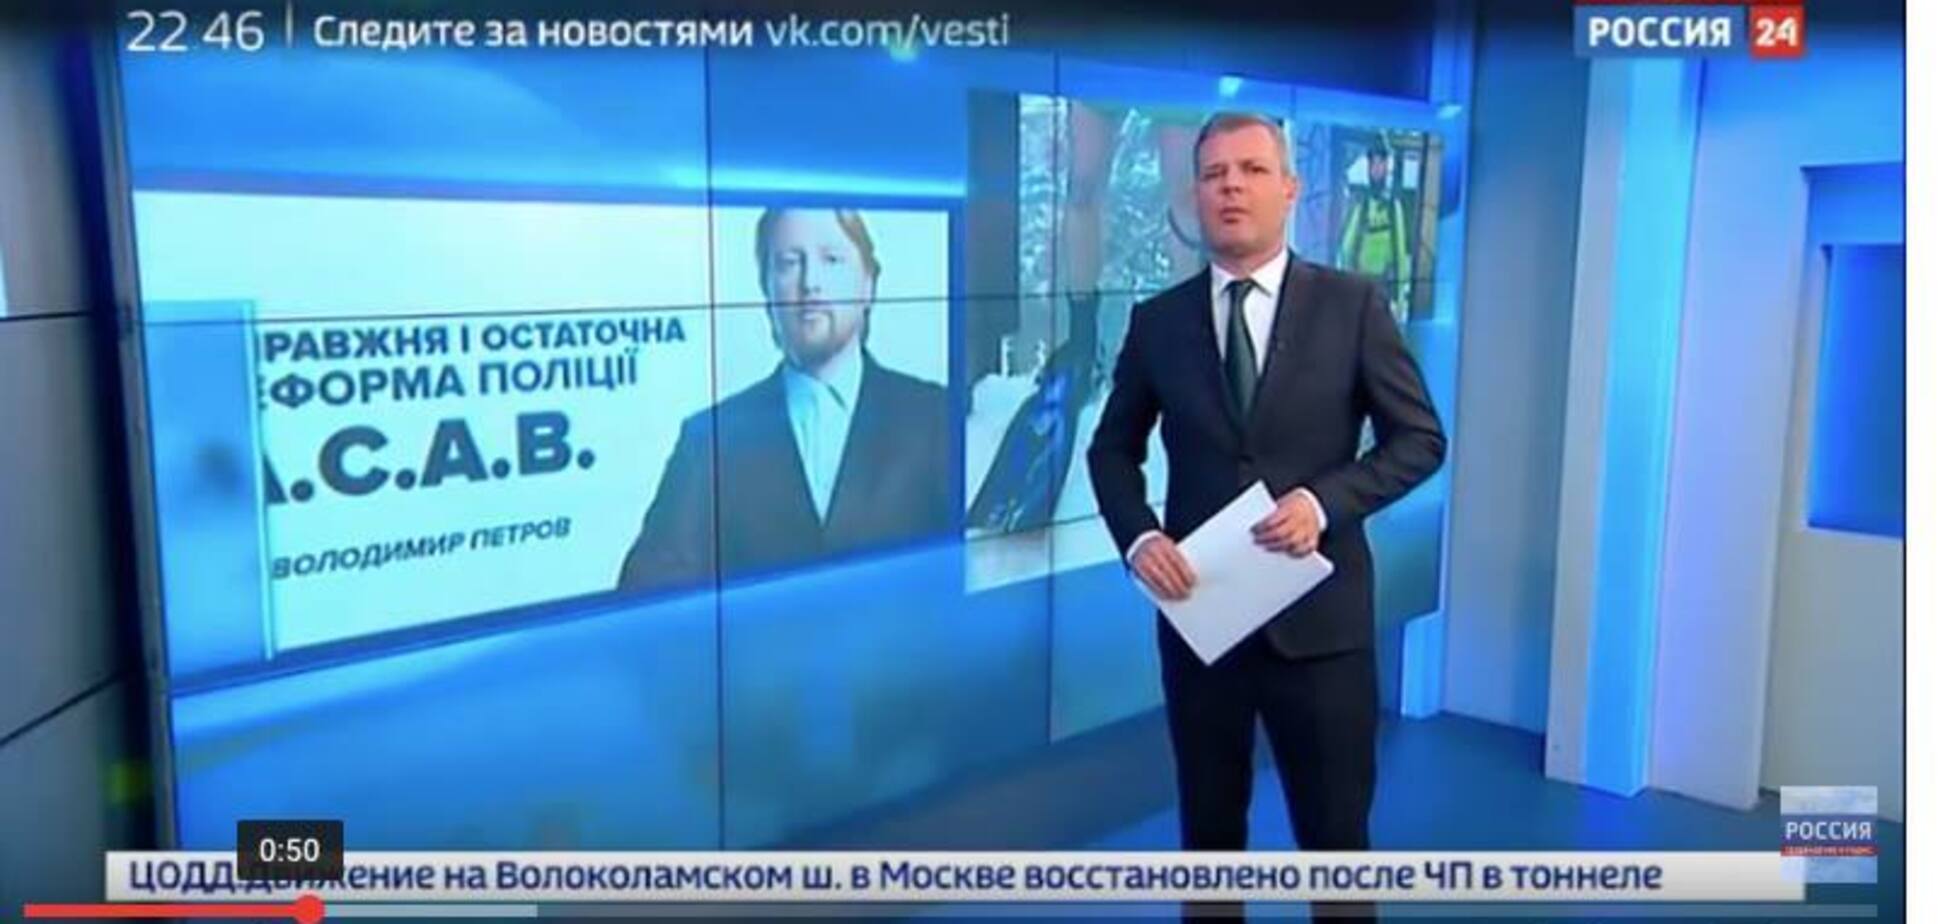 'Мусора' і А.С.А.В. в ефірі: російський канал в прайм-тайм цитував українського політтехнолога